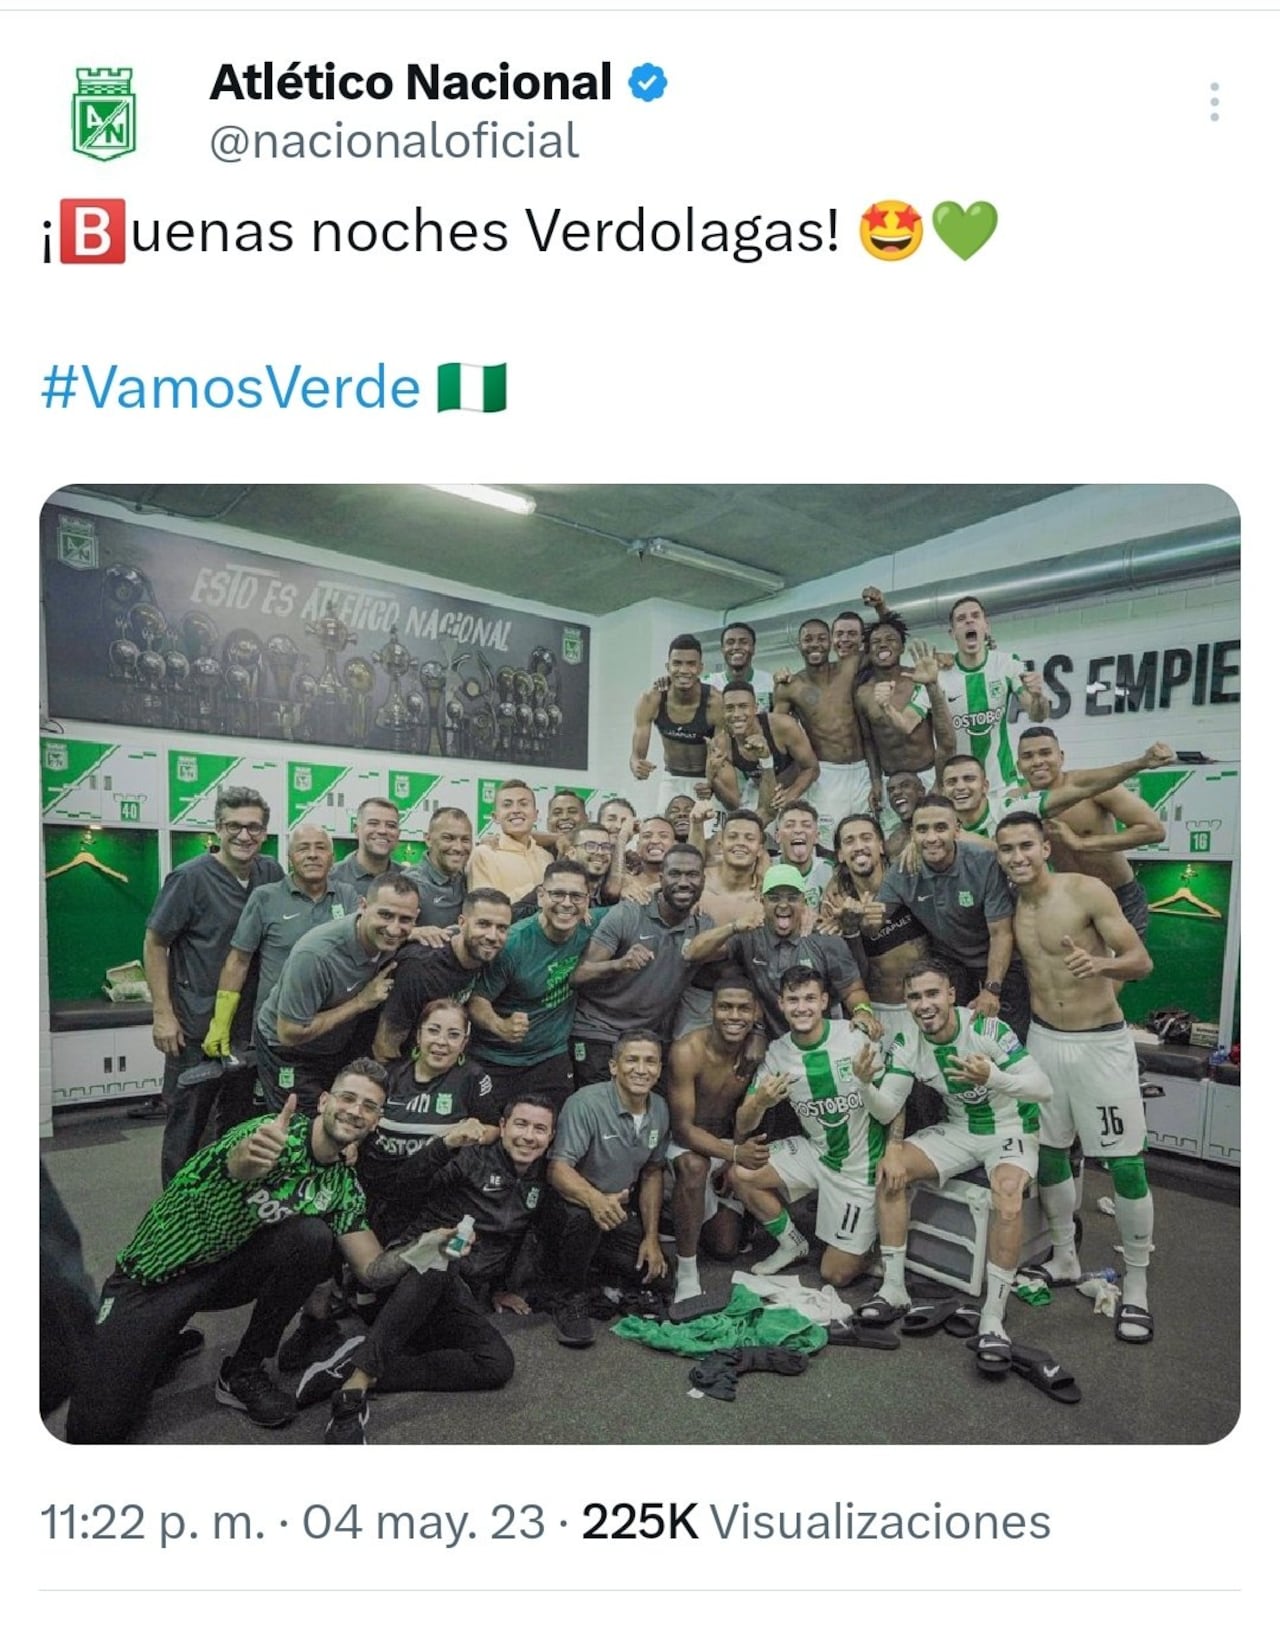 El tweet borrado en la cuenta oficial de Atlético Nacional